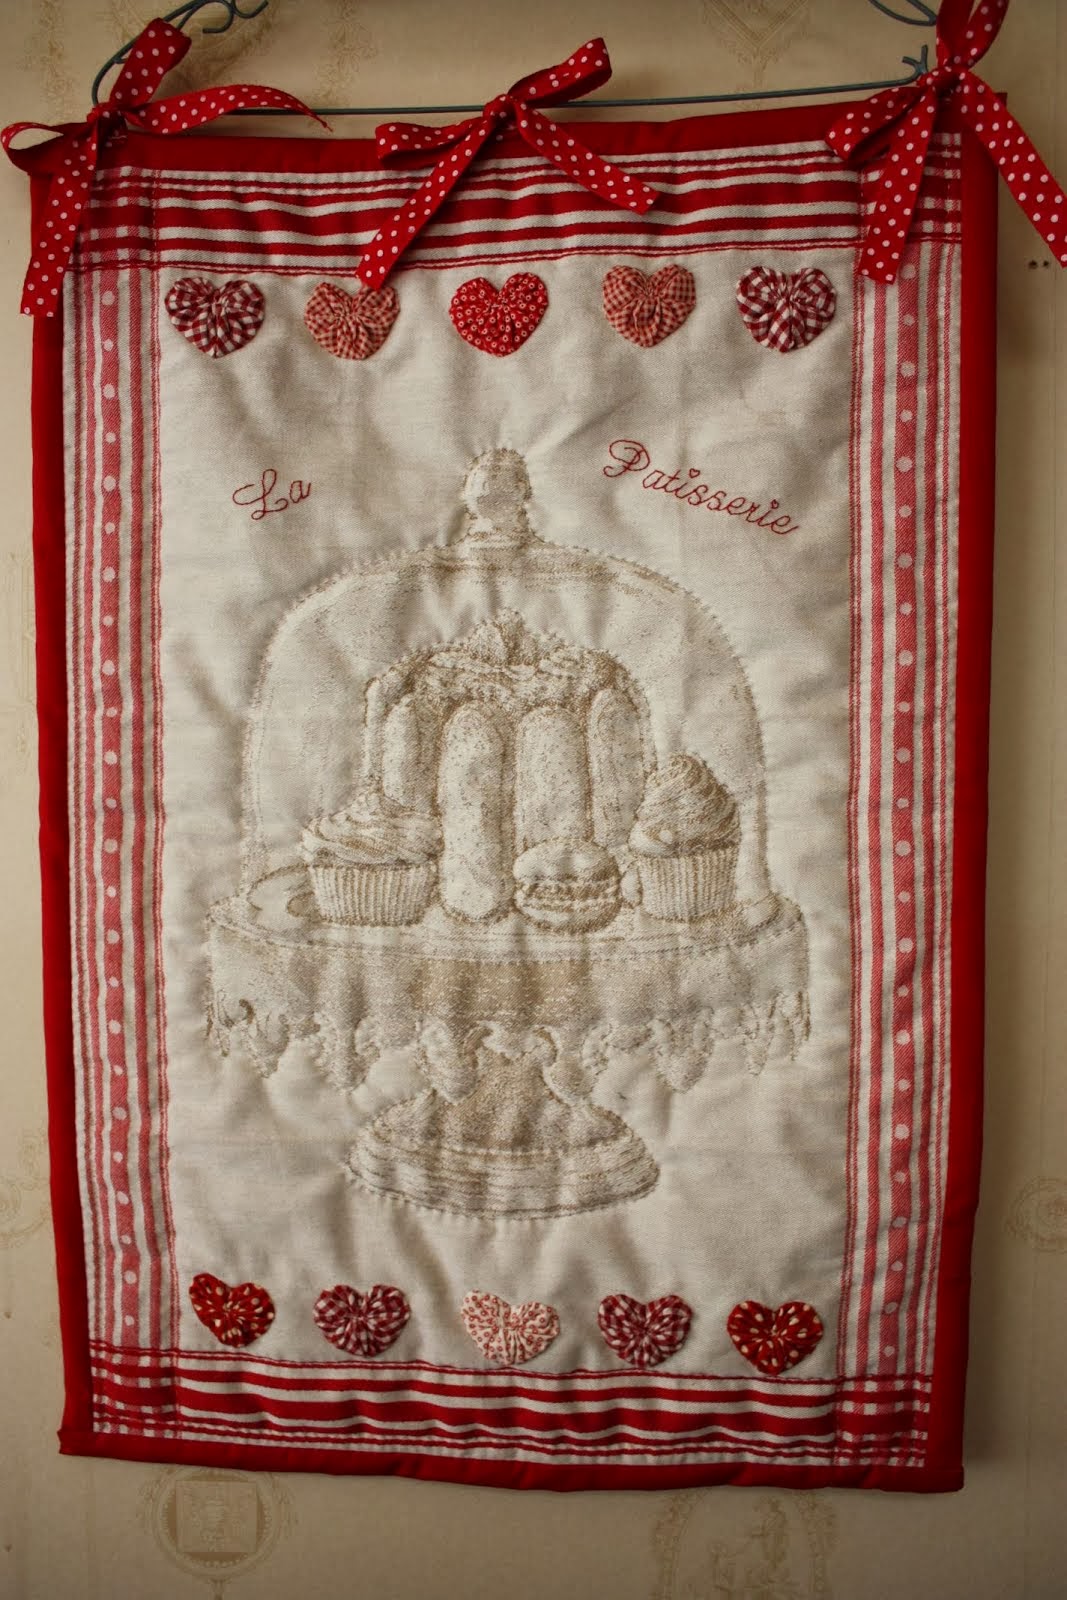 Tea towel quilt "La Patisserie"